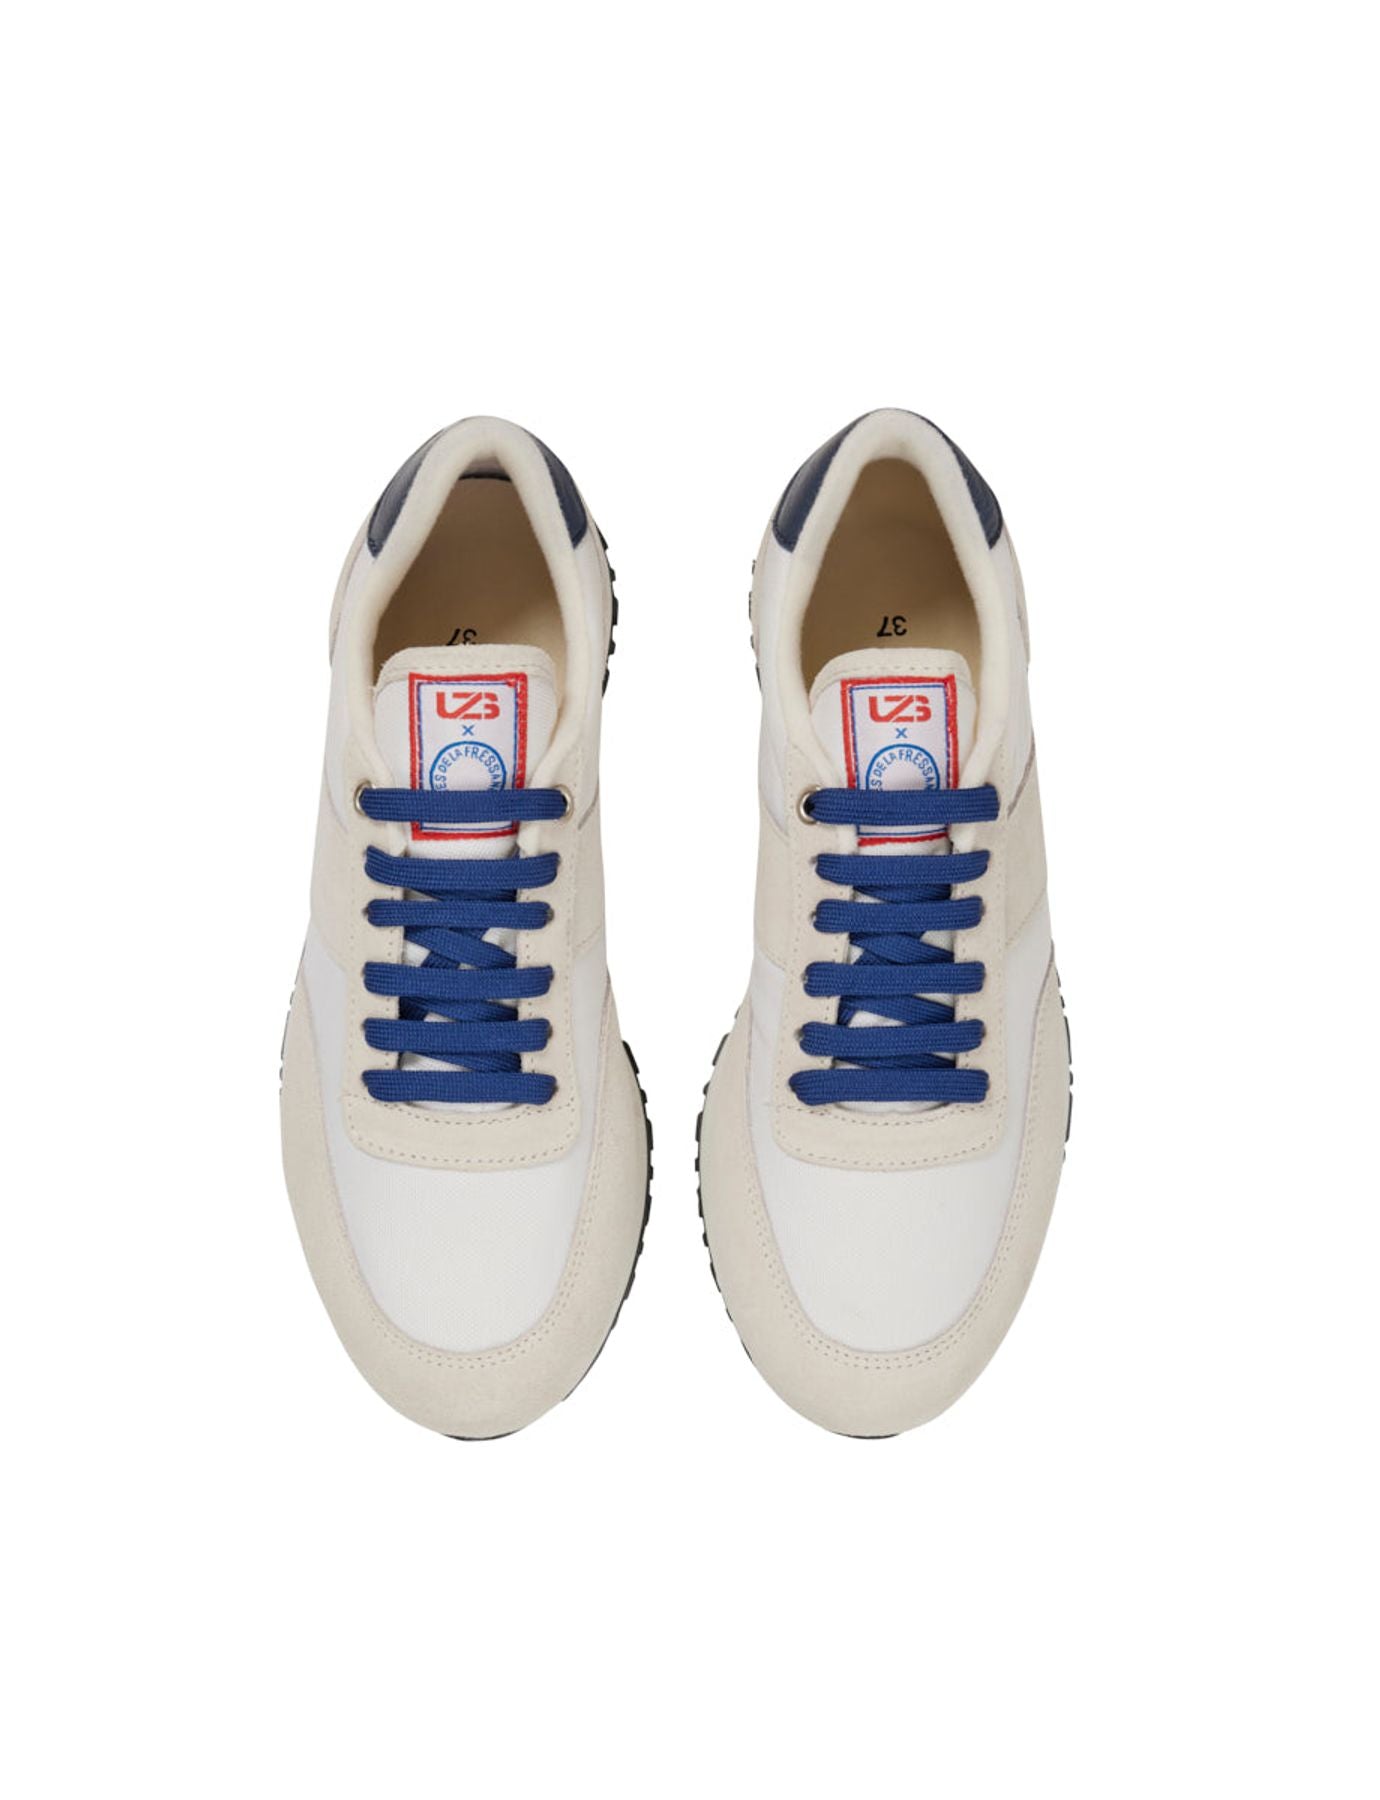 sneakers-quot-77-quot-uzs-x-ines-de-la-fressange-unisex-white-beige-blue